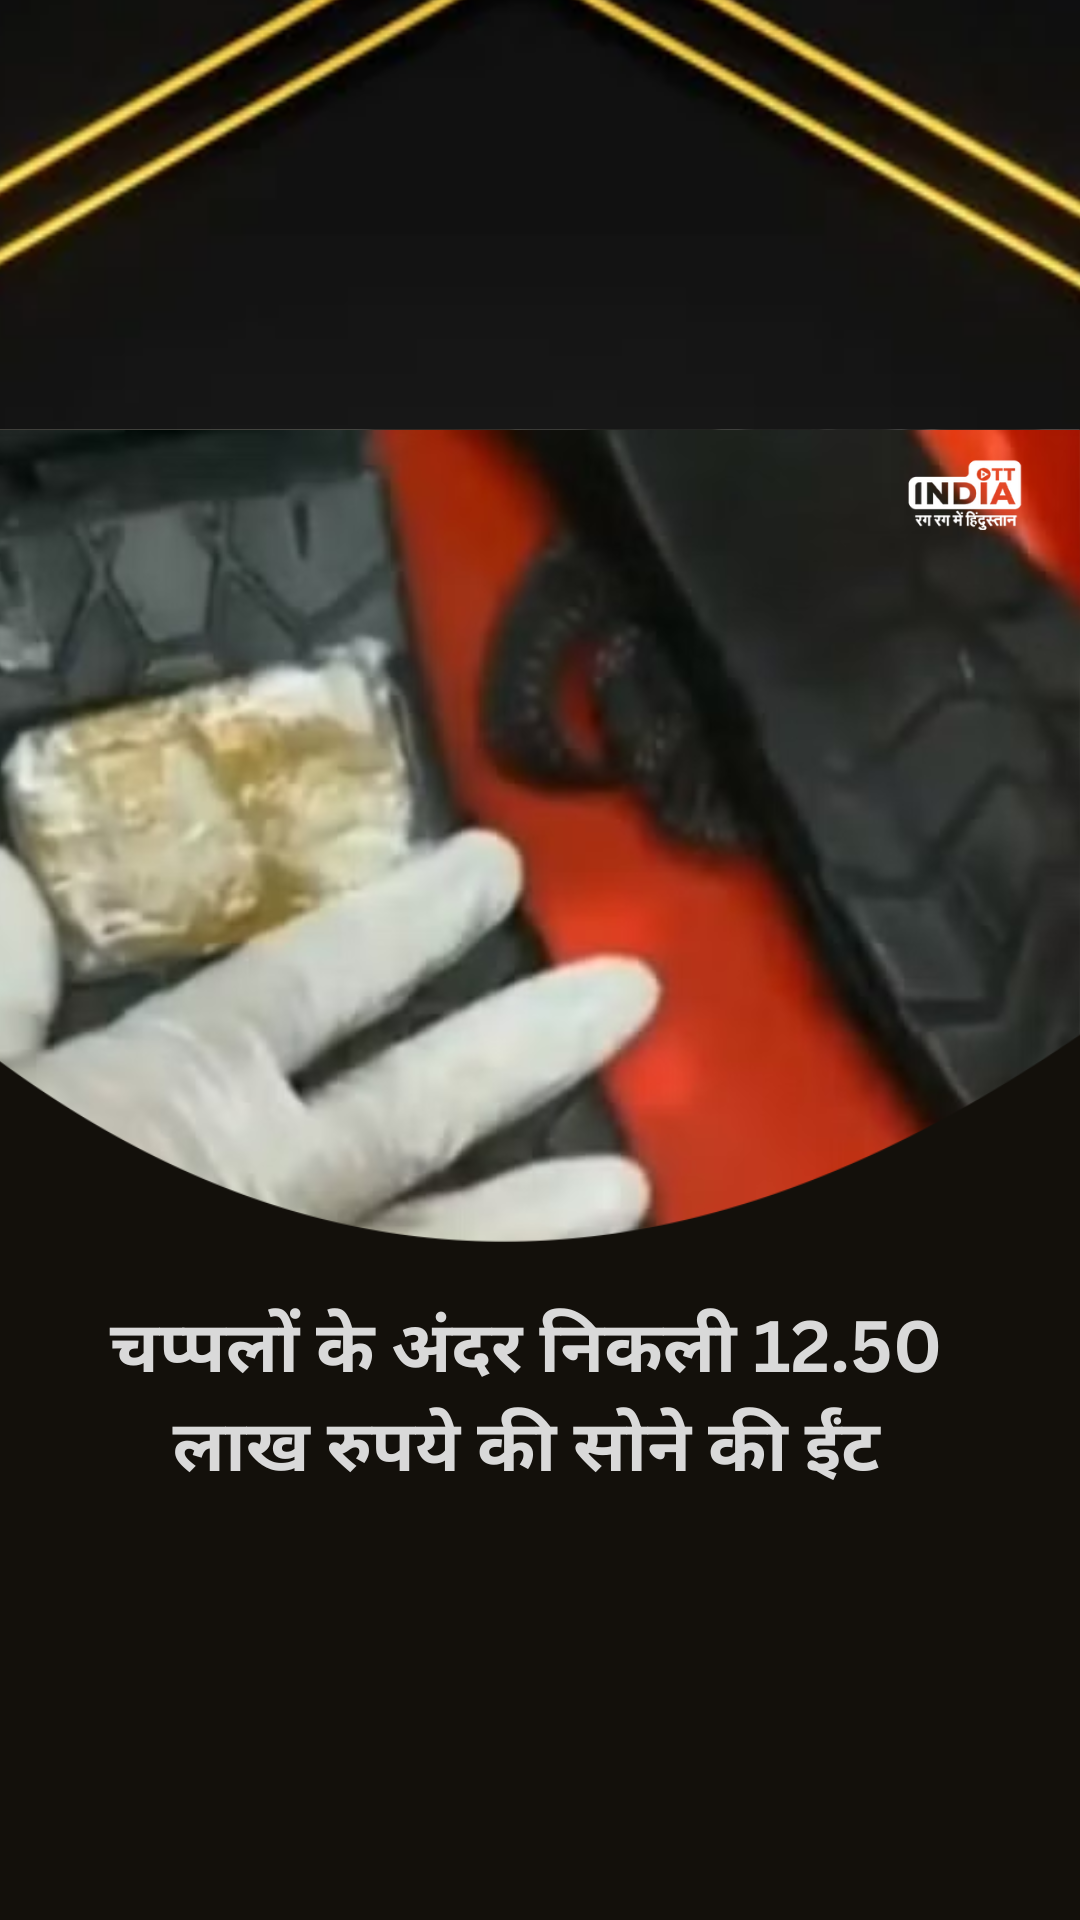 Tamil Nadu Viral Video: चप्पलों के अंदर छिपा रखी थी सोने की ईंट, कीमत लगभग 12.50 लाख रुपये